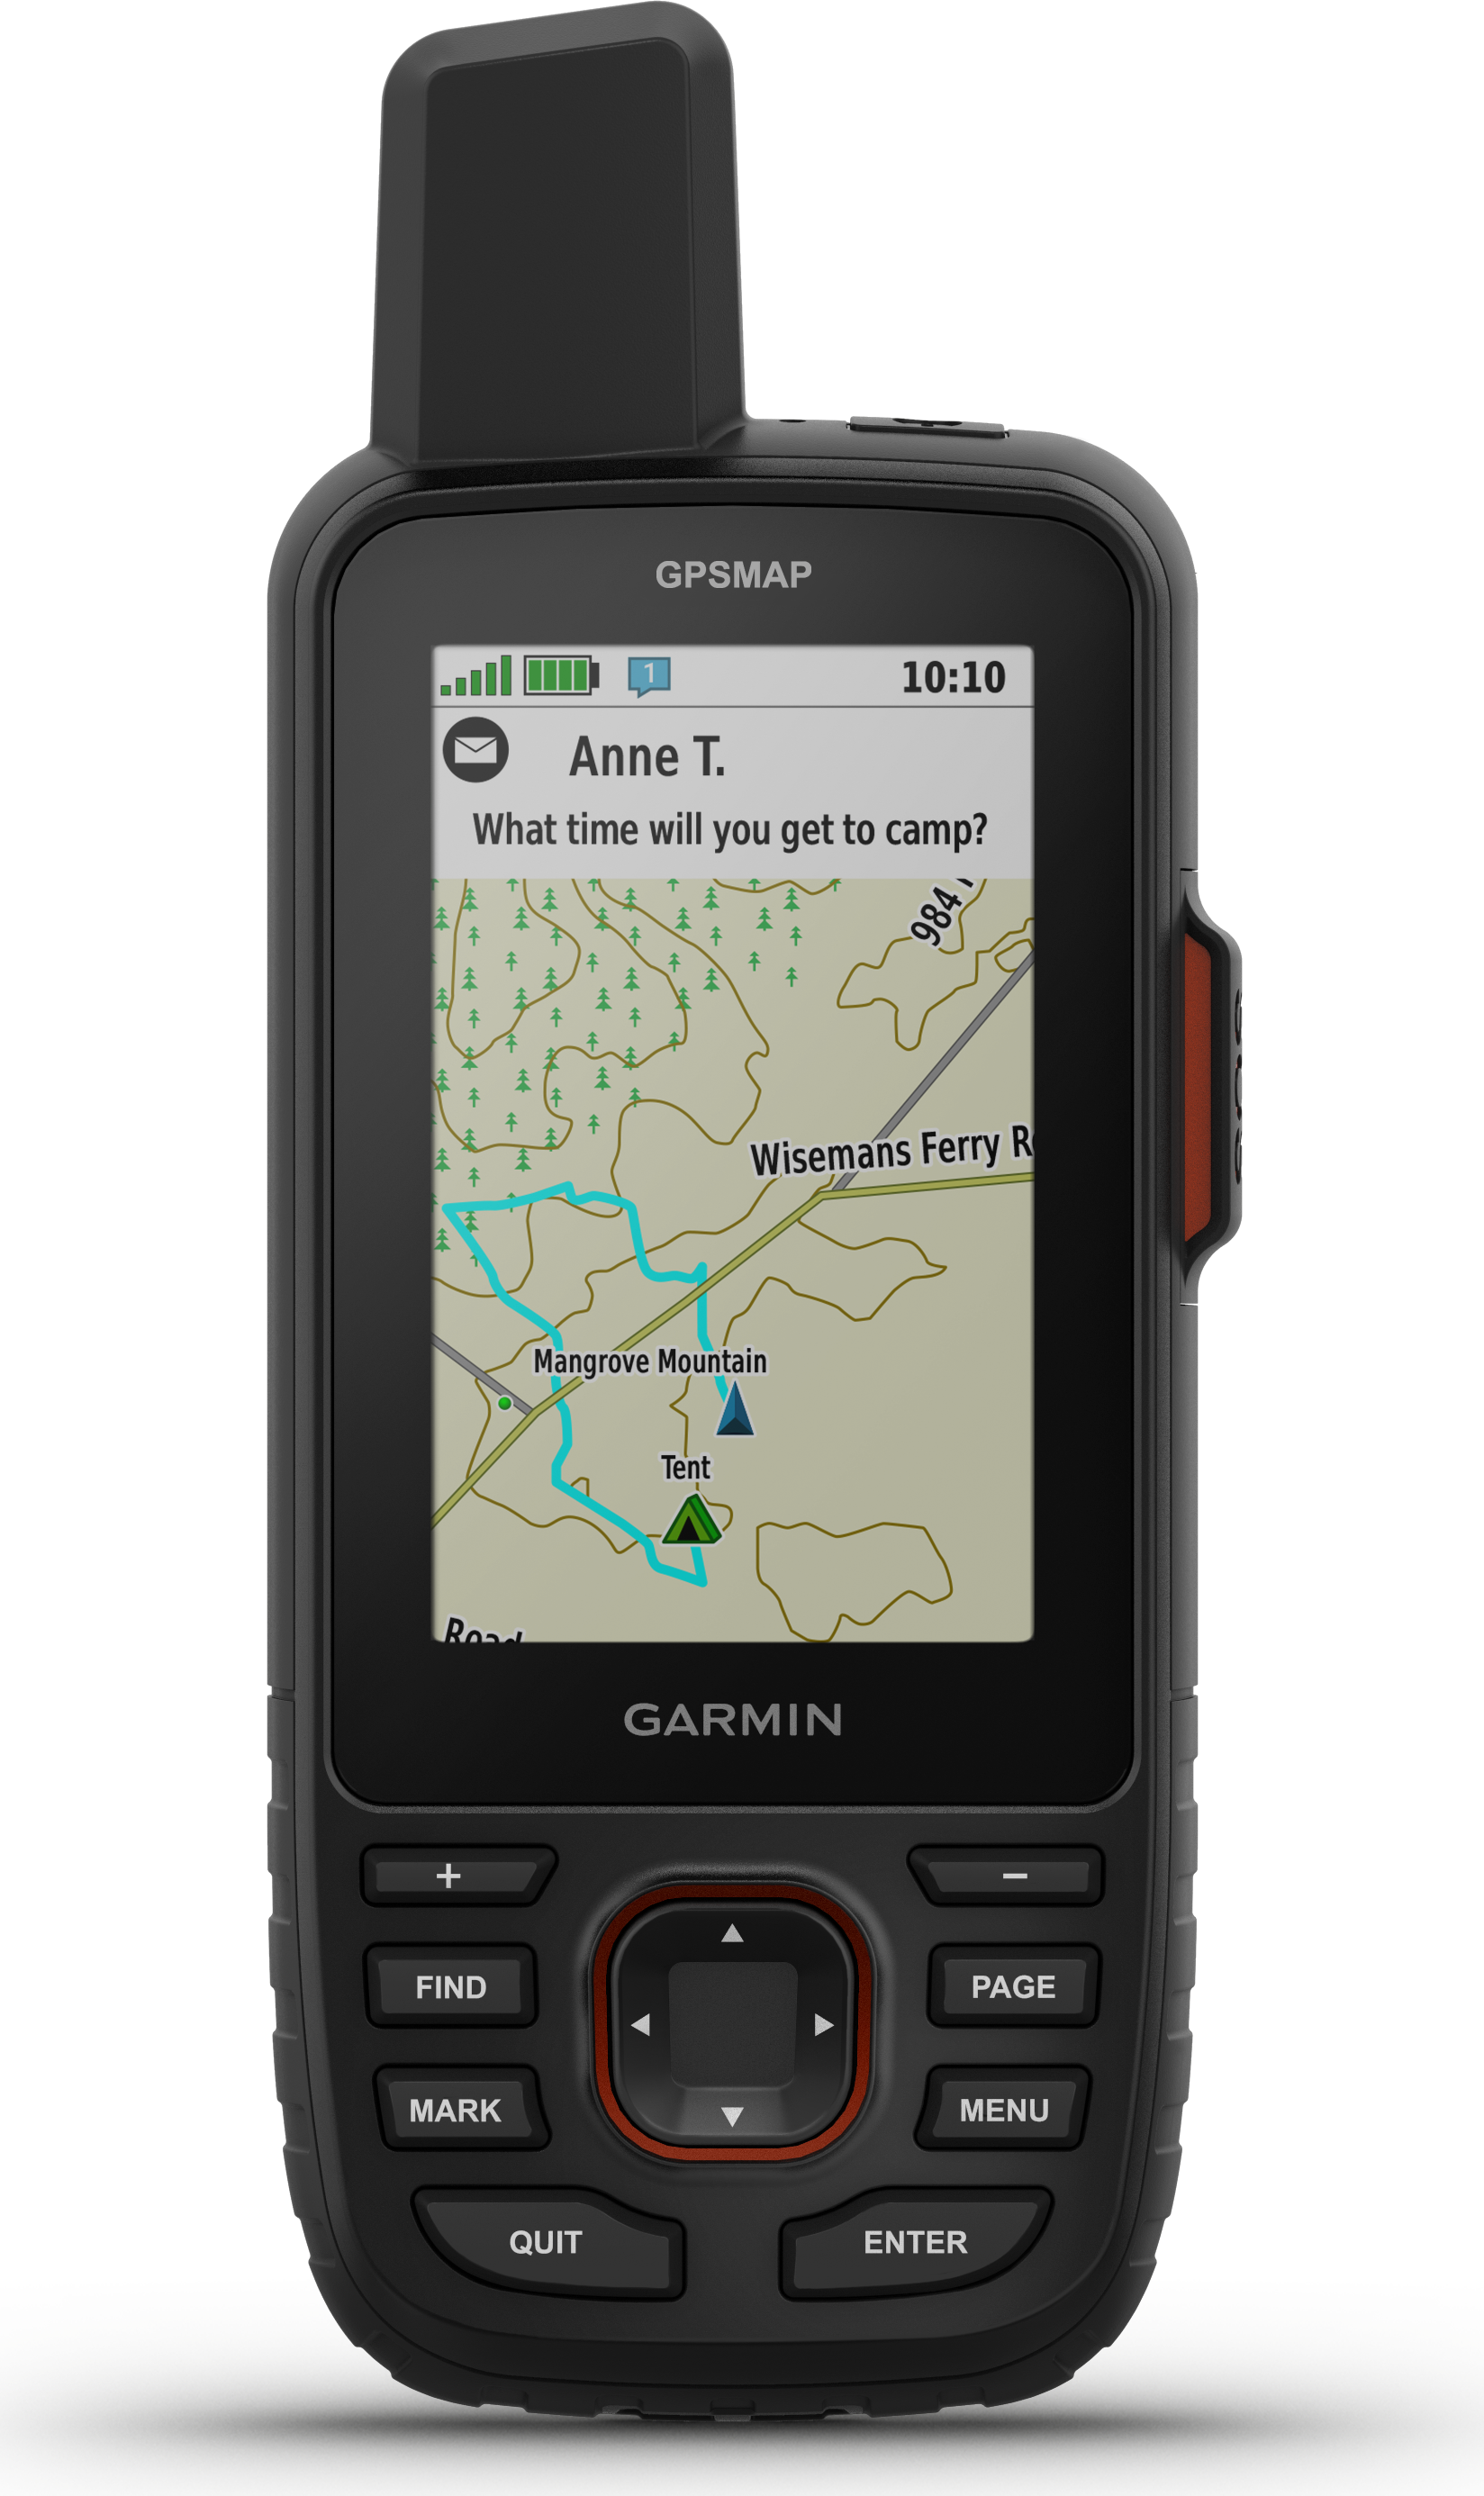 GPSMAP 67i